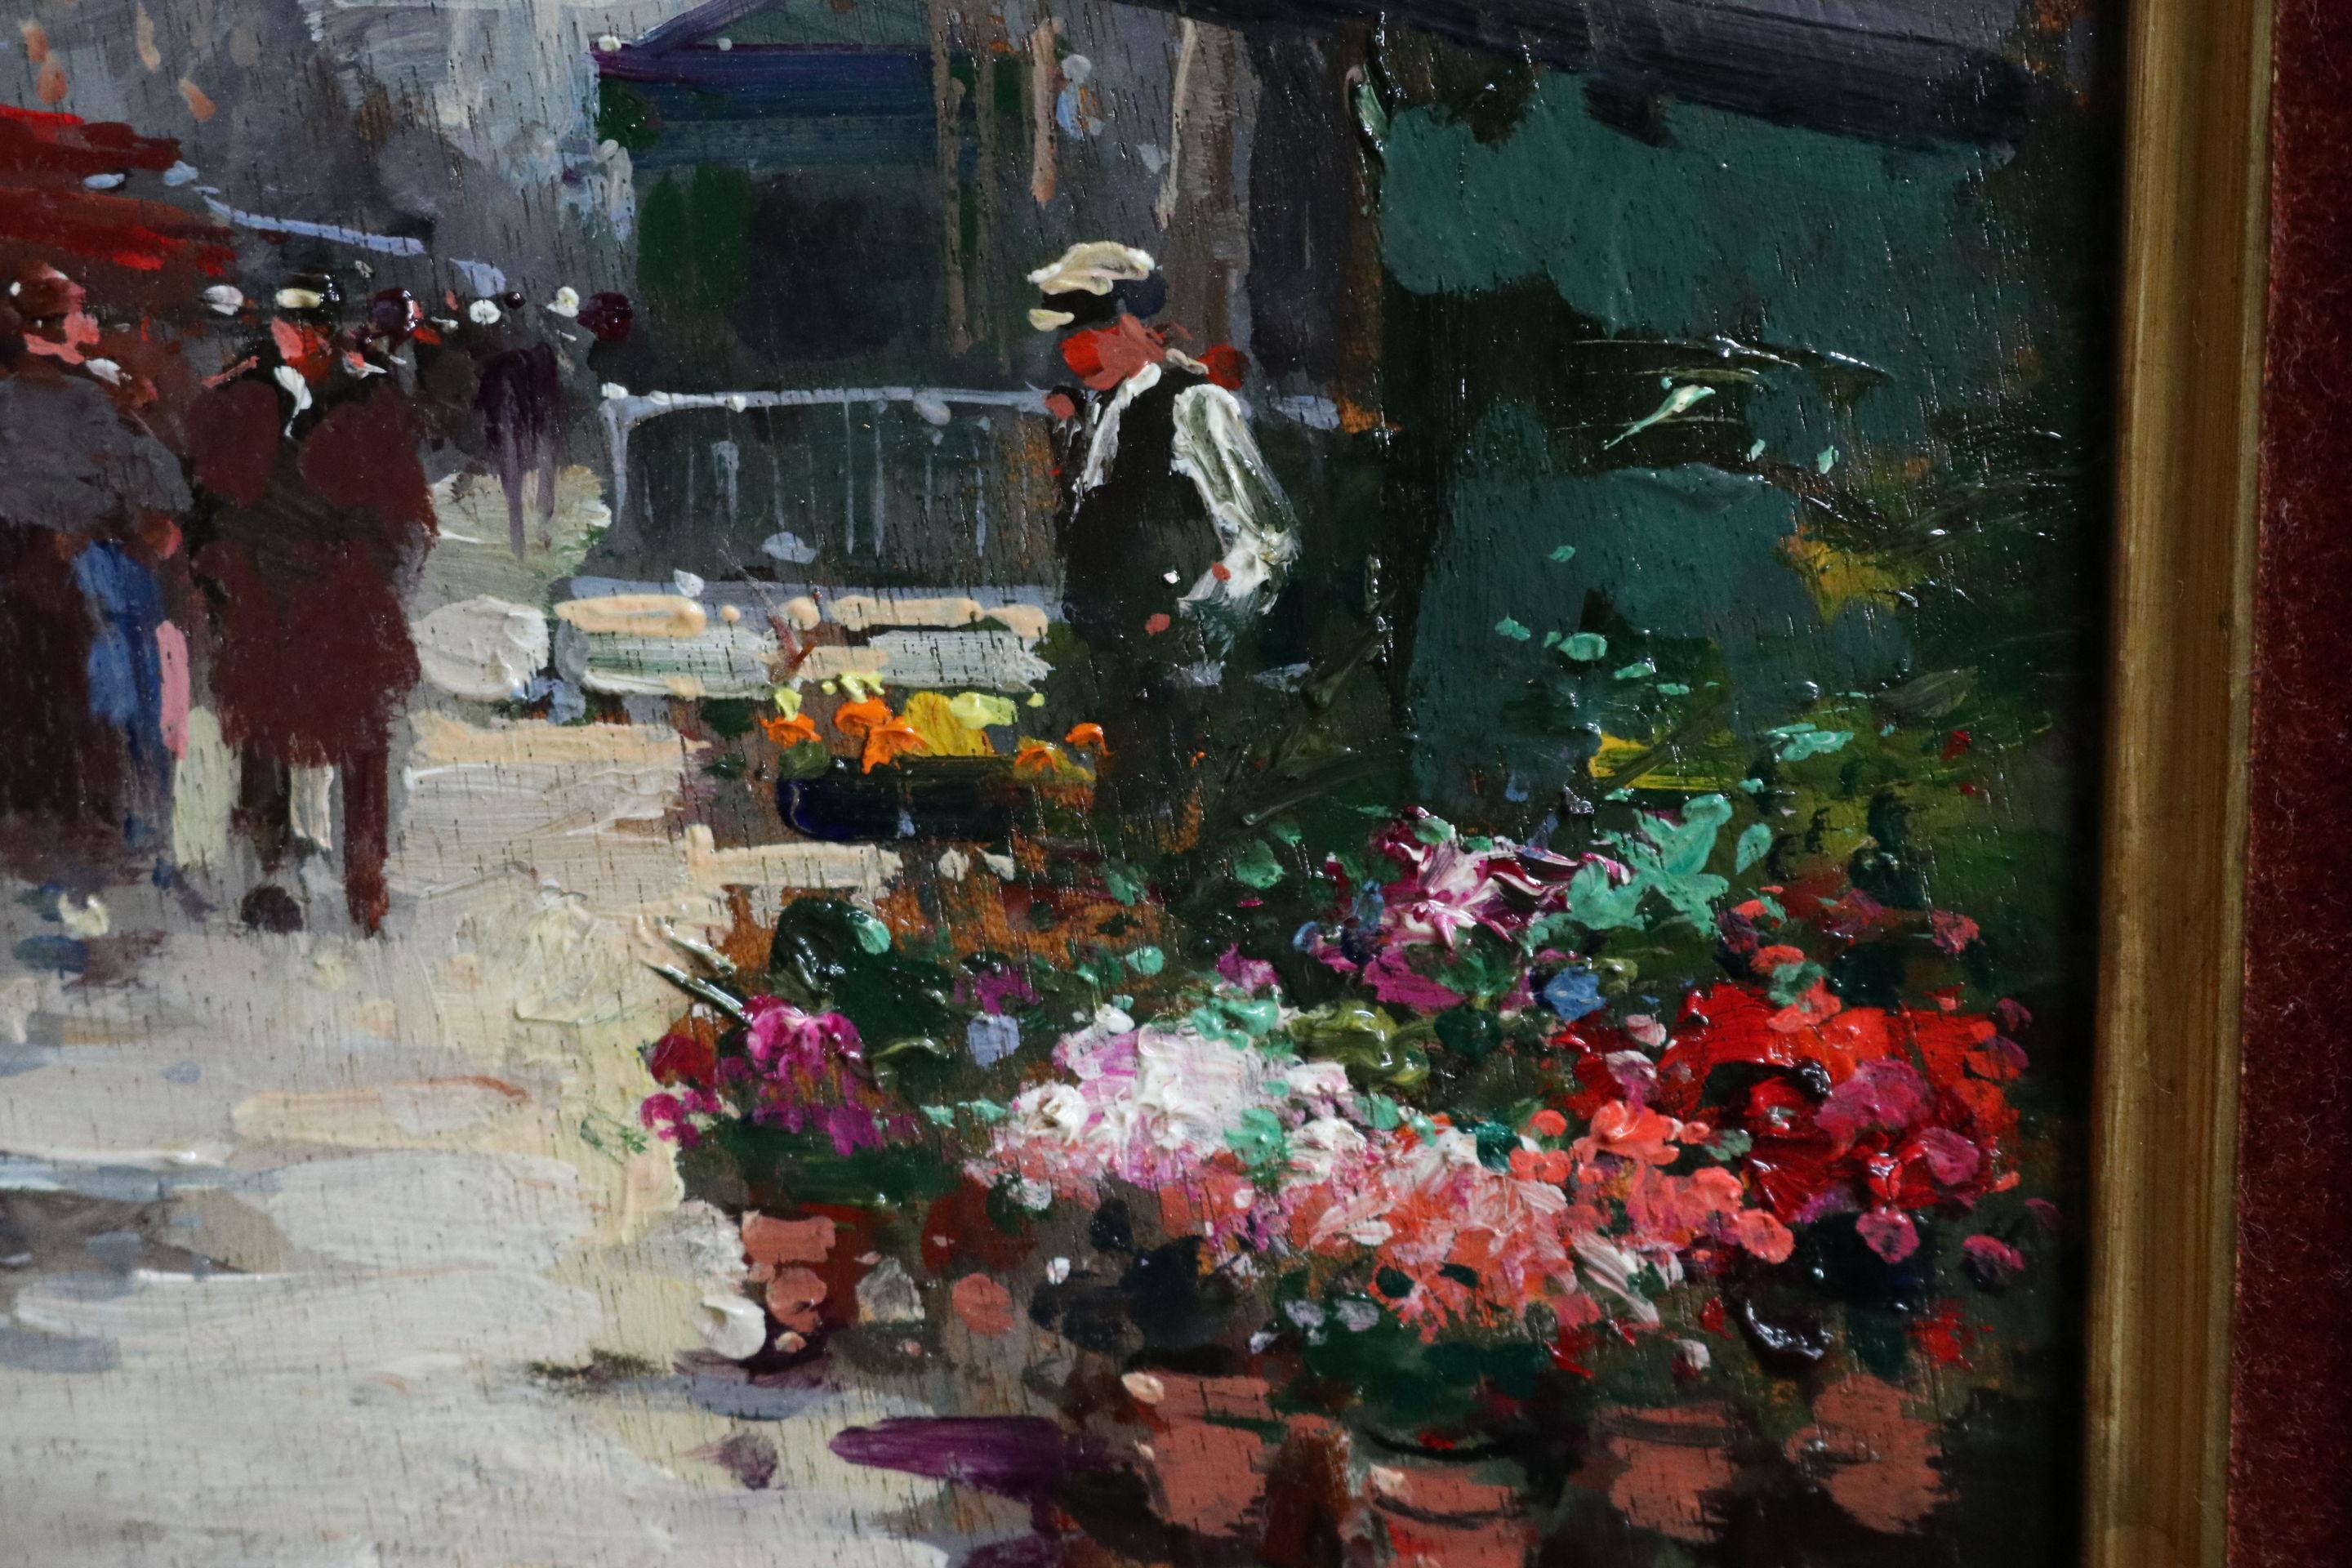 Marche aux Fleurs - Place de la Madeleine - 20th Century Oil, Landscape - Cortes - Impressionist Painting by Édouard Leon Cortès